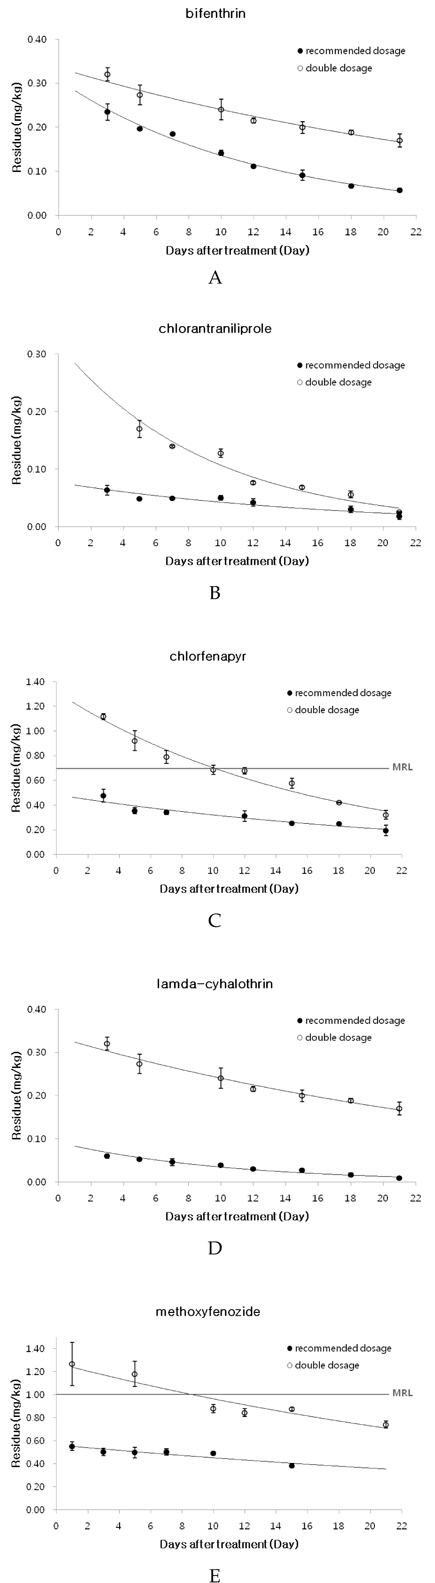 Dissipation curves of bifenthrin (A),chlorantraniliprole (B), chlorfenapyr (C), lamdacyhalothrin (D) and methoxyfenozide (E) in paprika.